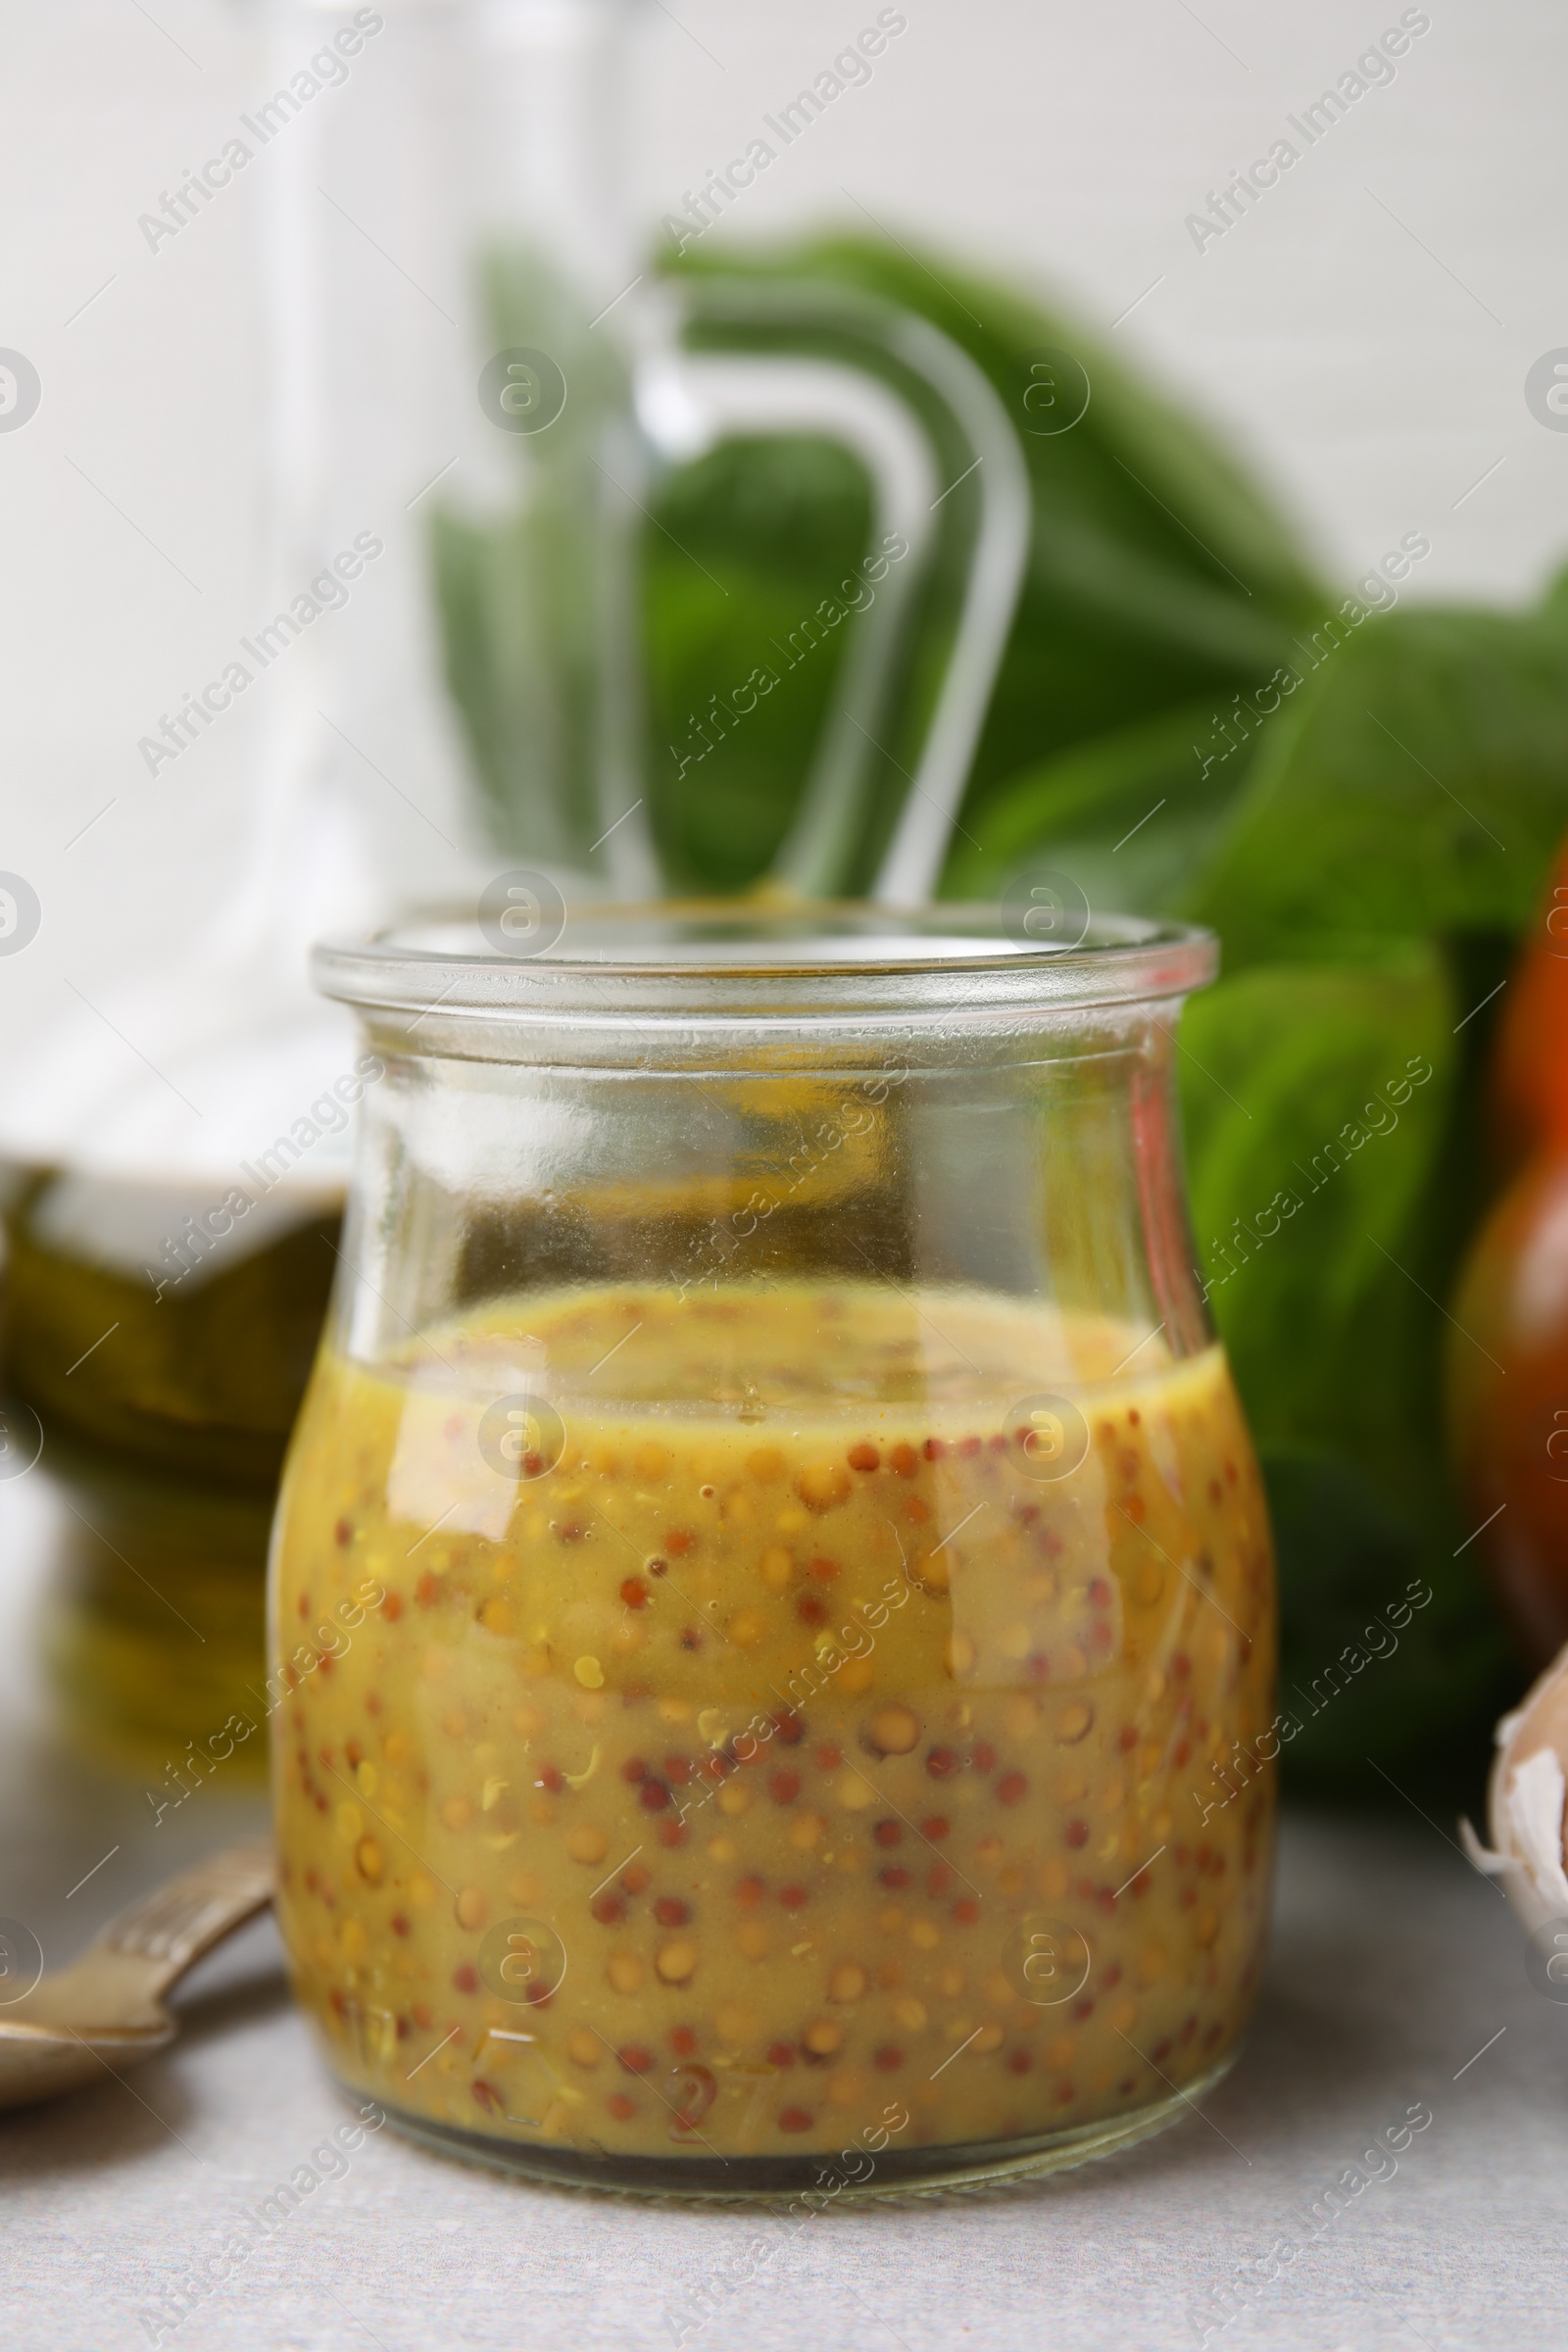 Photo of Tasty vinegar based sauce (Vinaigrette) in jar on light table, closeup